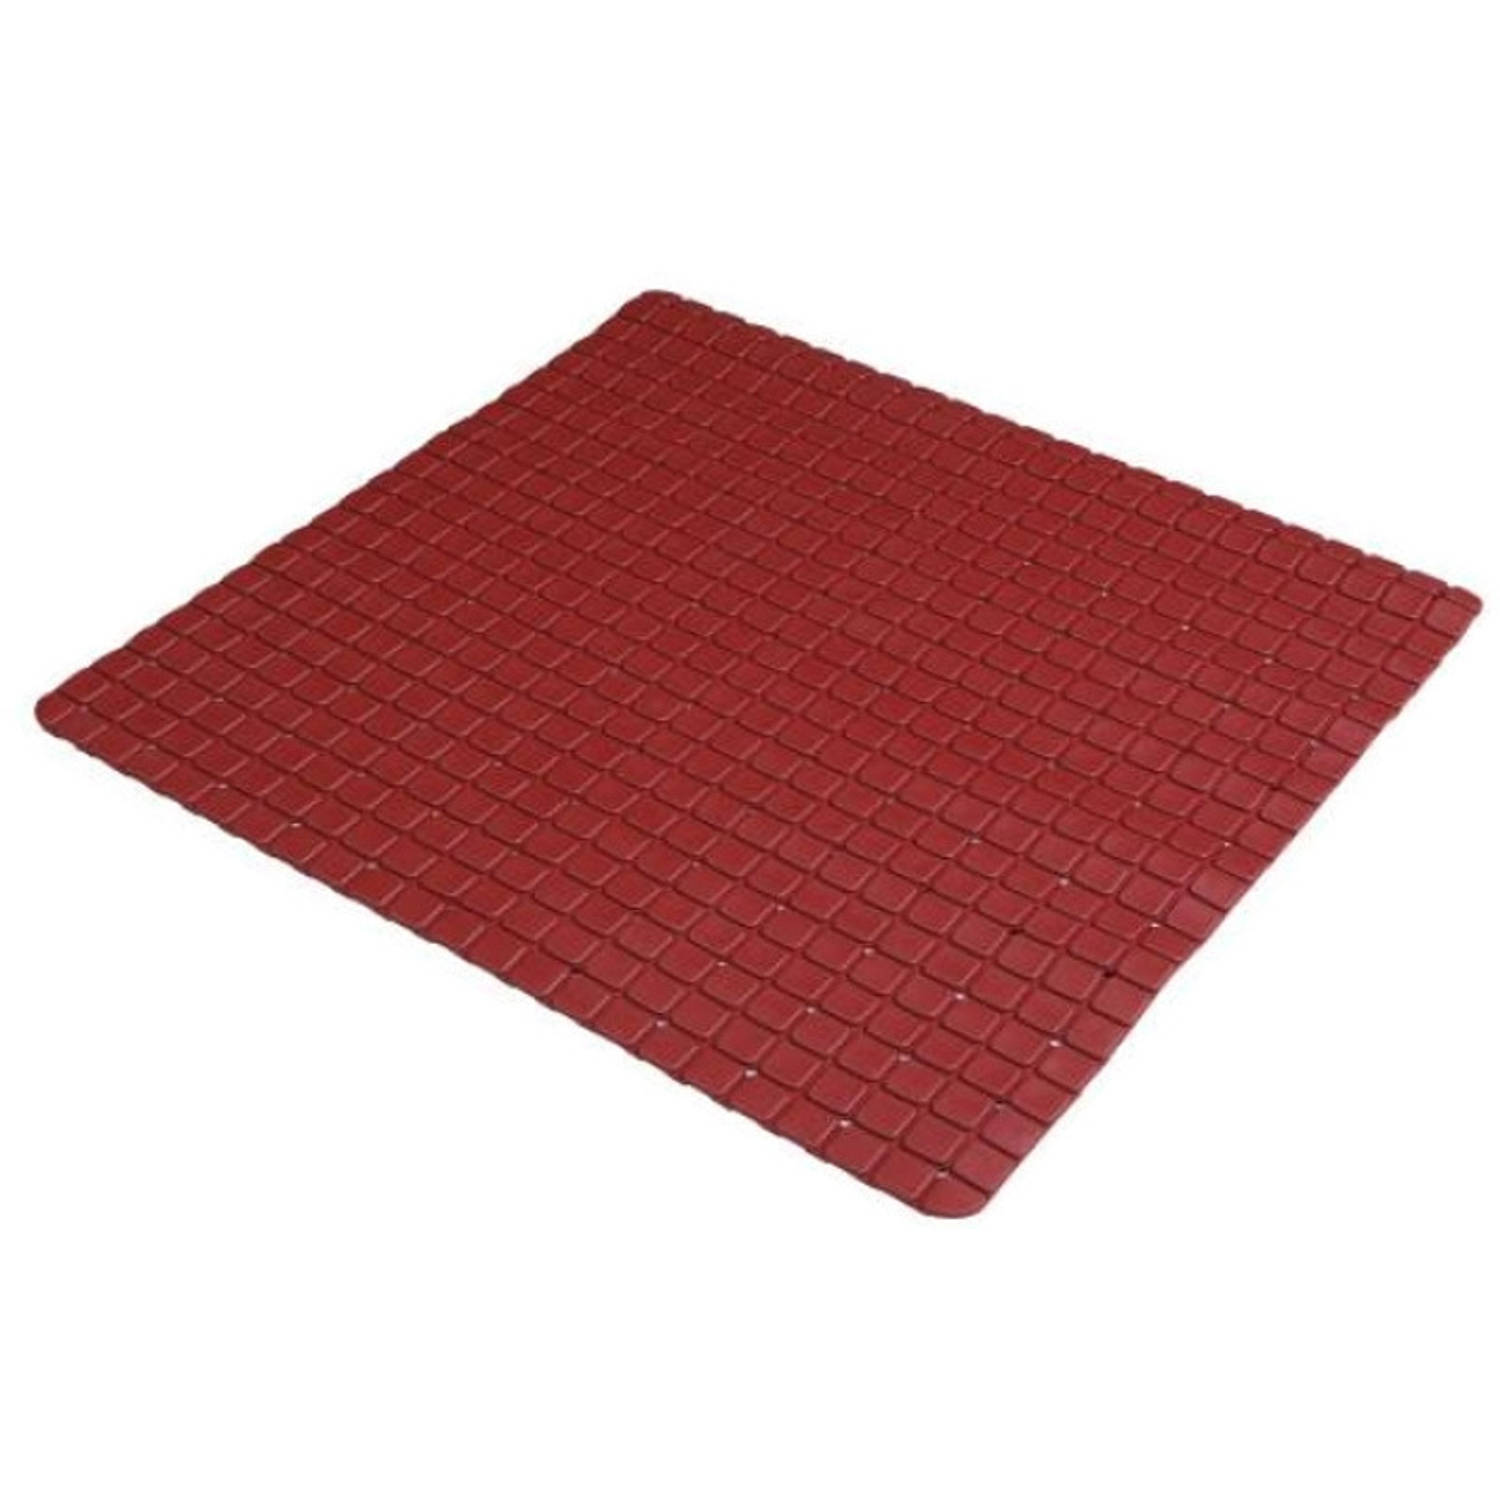 Urban Living Badkamer/douche anti slip mat - rubber - voor op de vloer - donkerrood - 55 x 55 cm